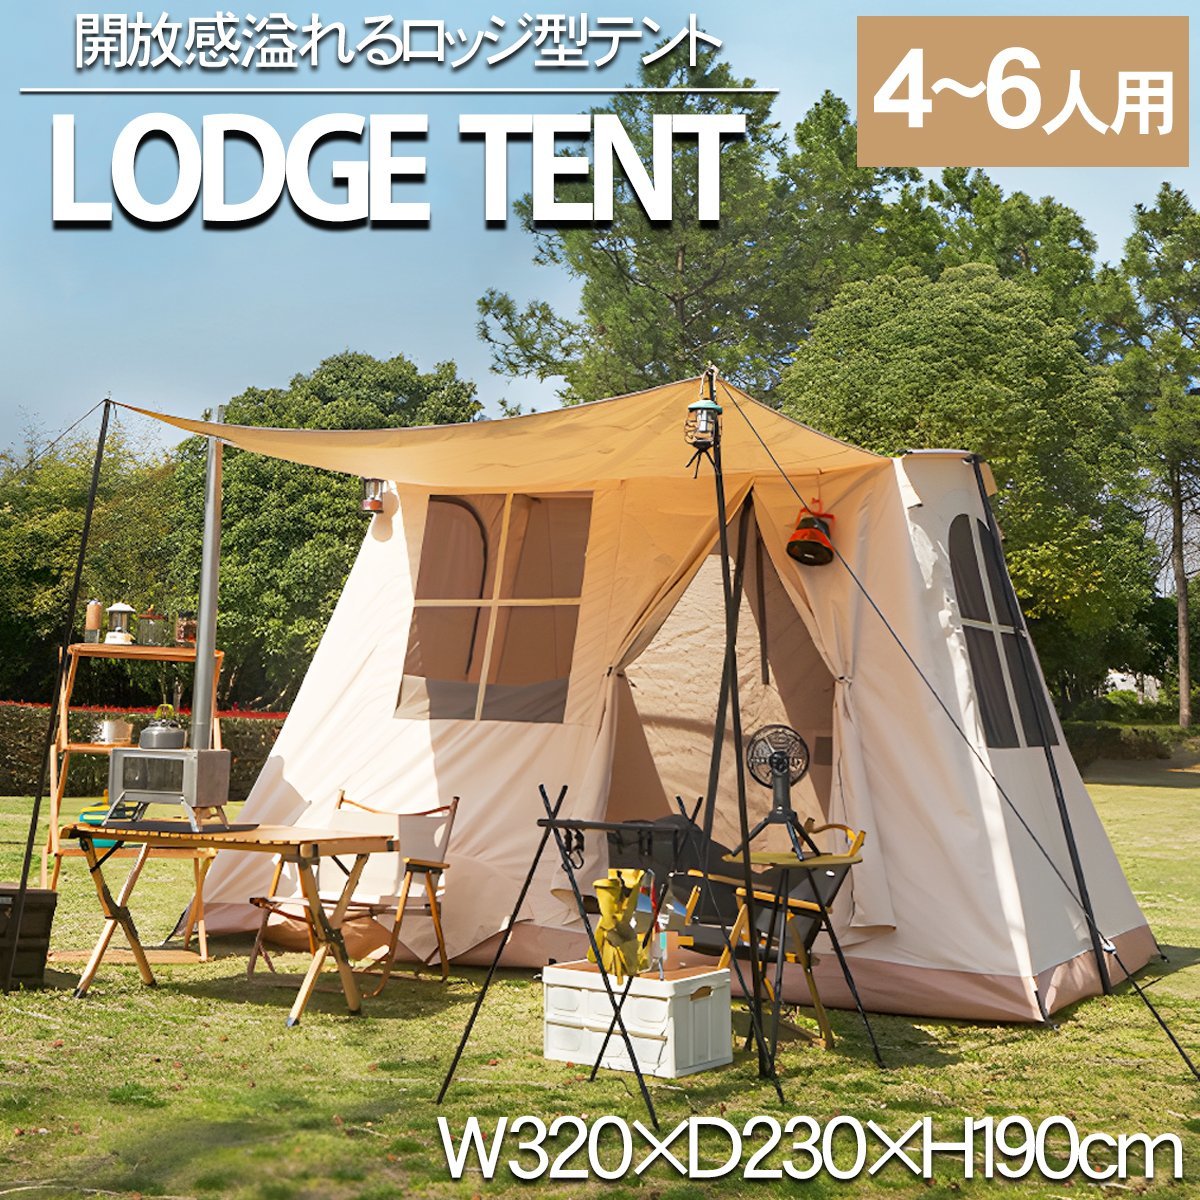 【在庫僅少】 アウトドア テント TN-37BJ バーベキュー キャンプ 自立式 ファミリーテント 遮光 防風 防水 6人用 ハウステント ロッジテント ロッジ型 ～7人用